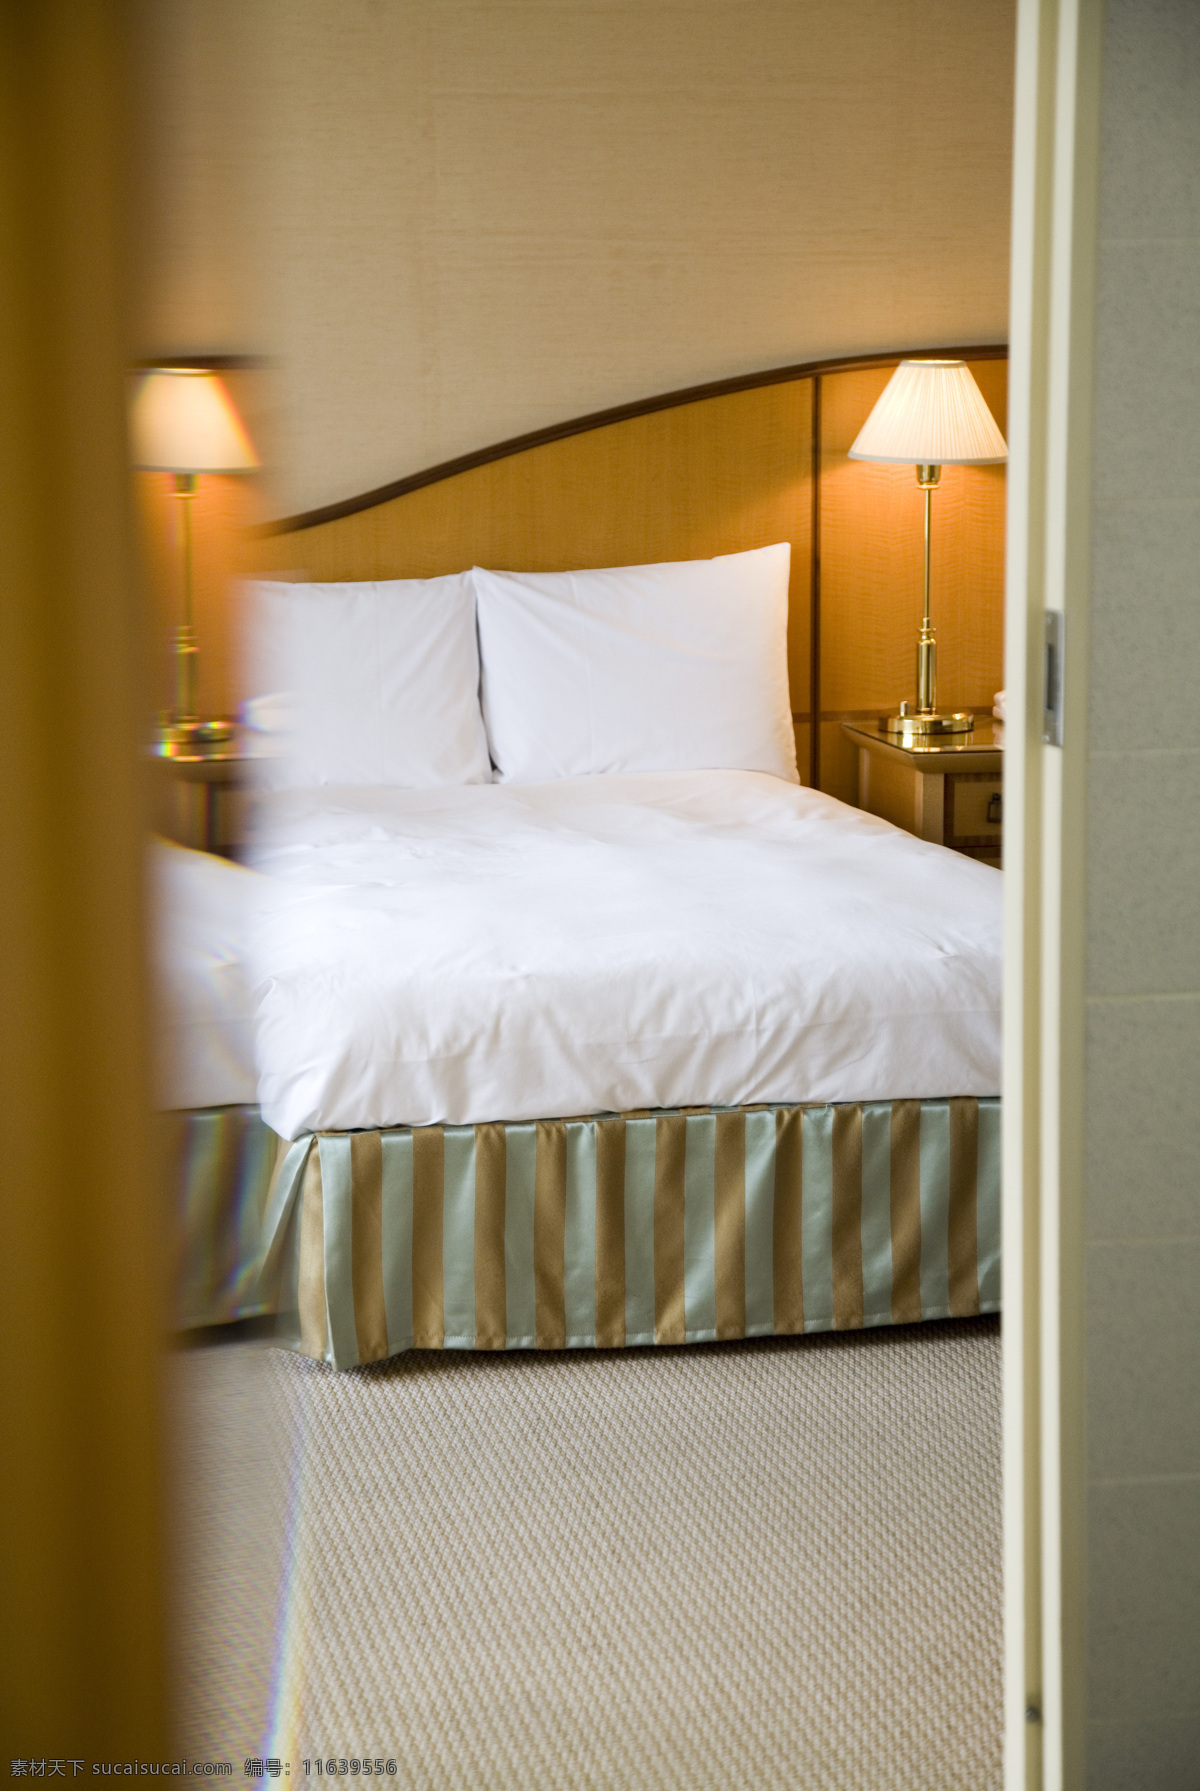 酒店 客房 内 整洁 床 台灯 宾馆 室内 一张床 双人床 干净 床头柜 酒店主题 高清图片 室内设计 环境家居